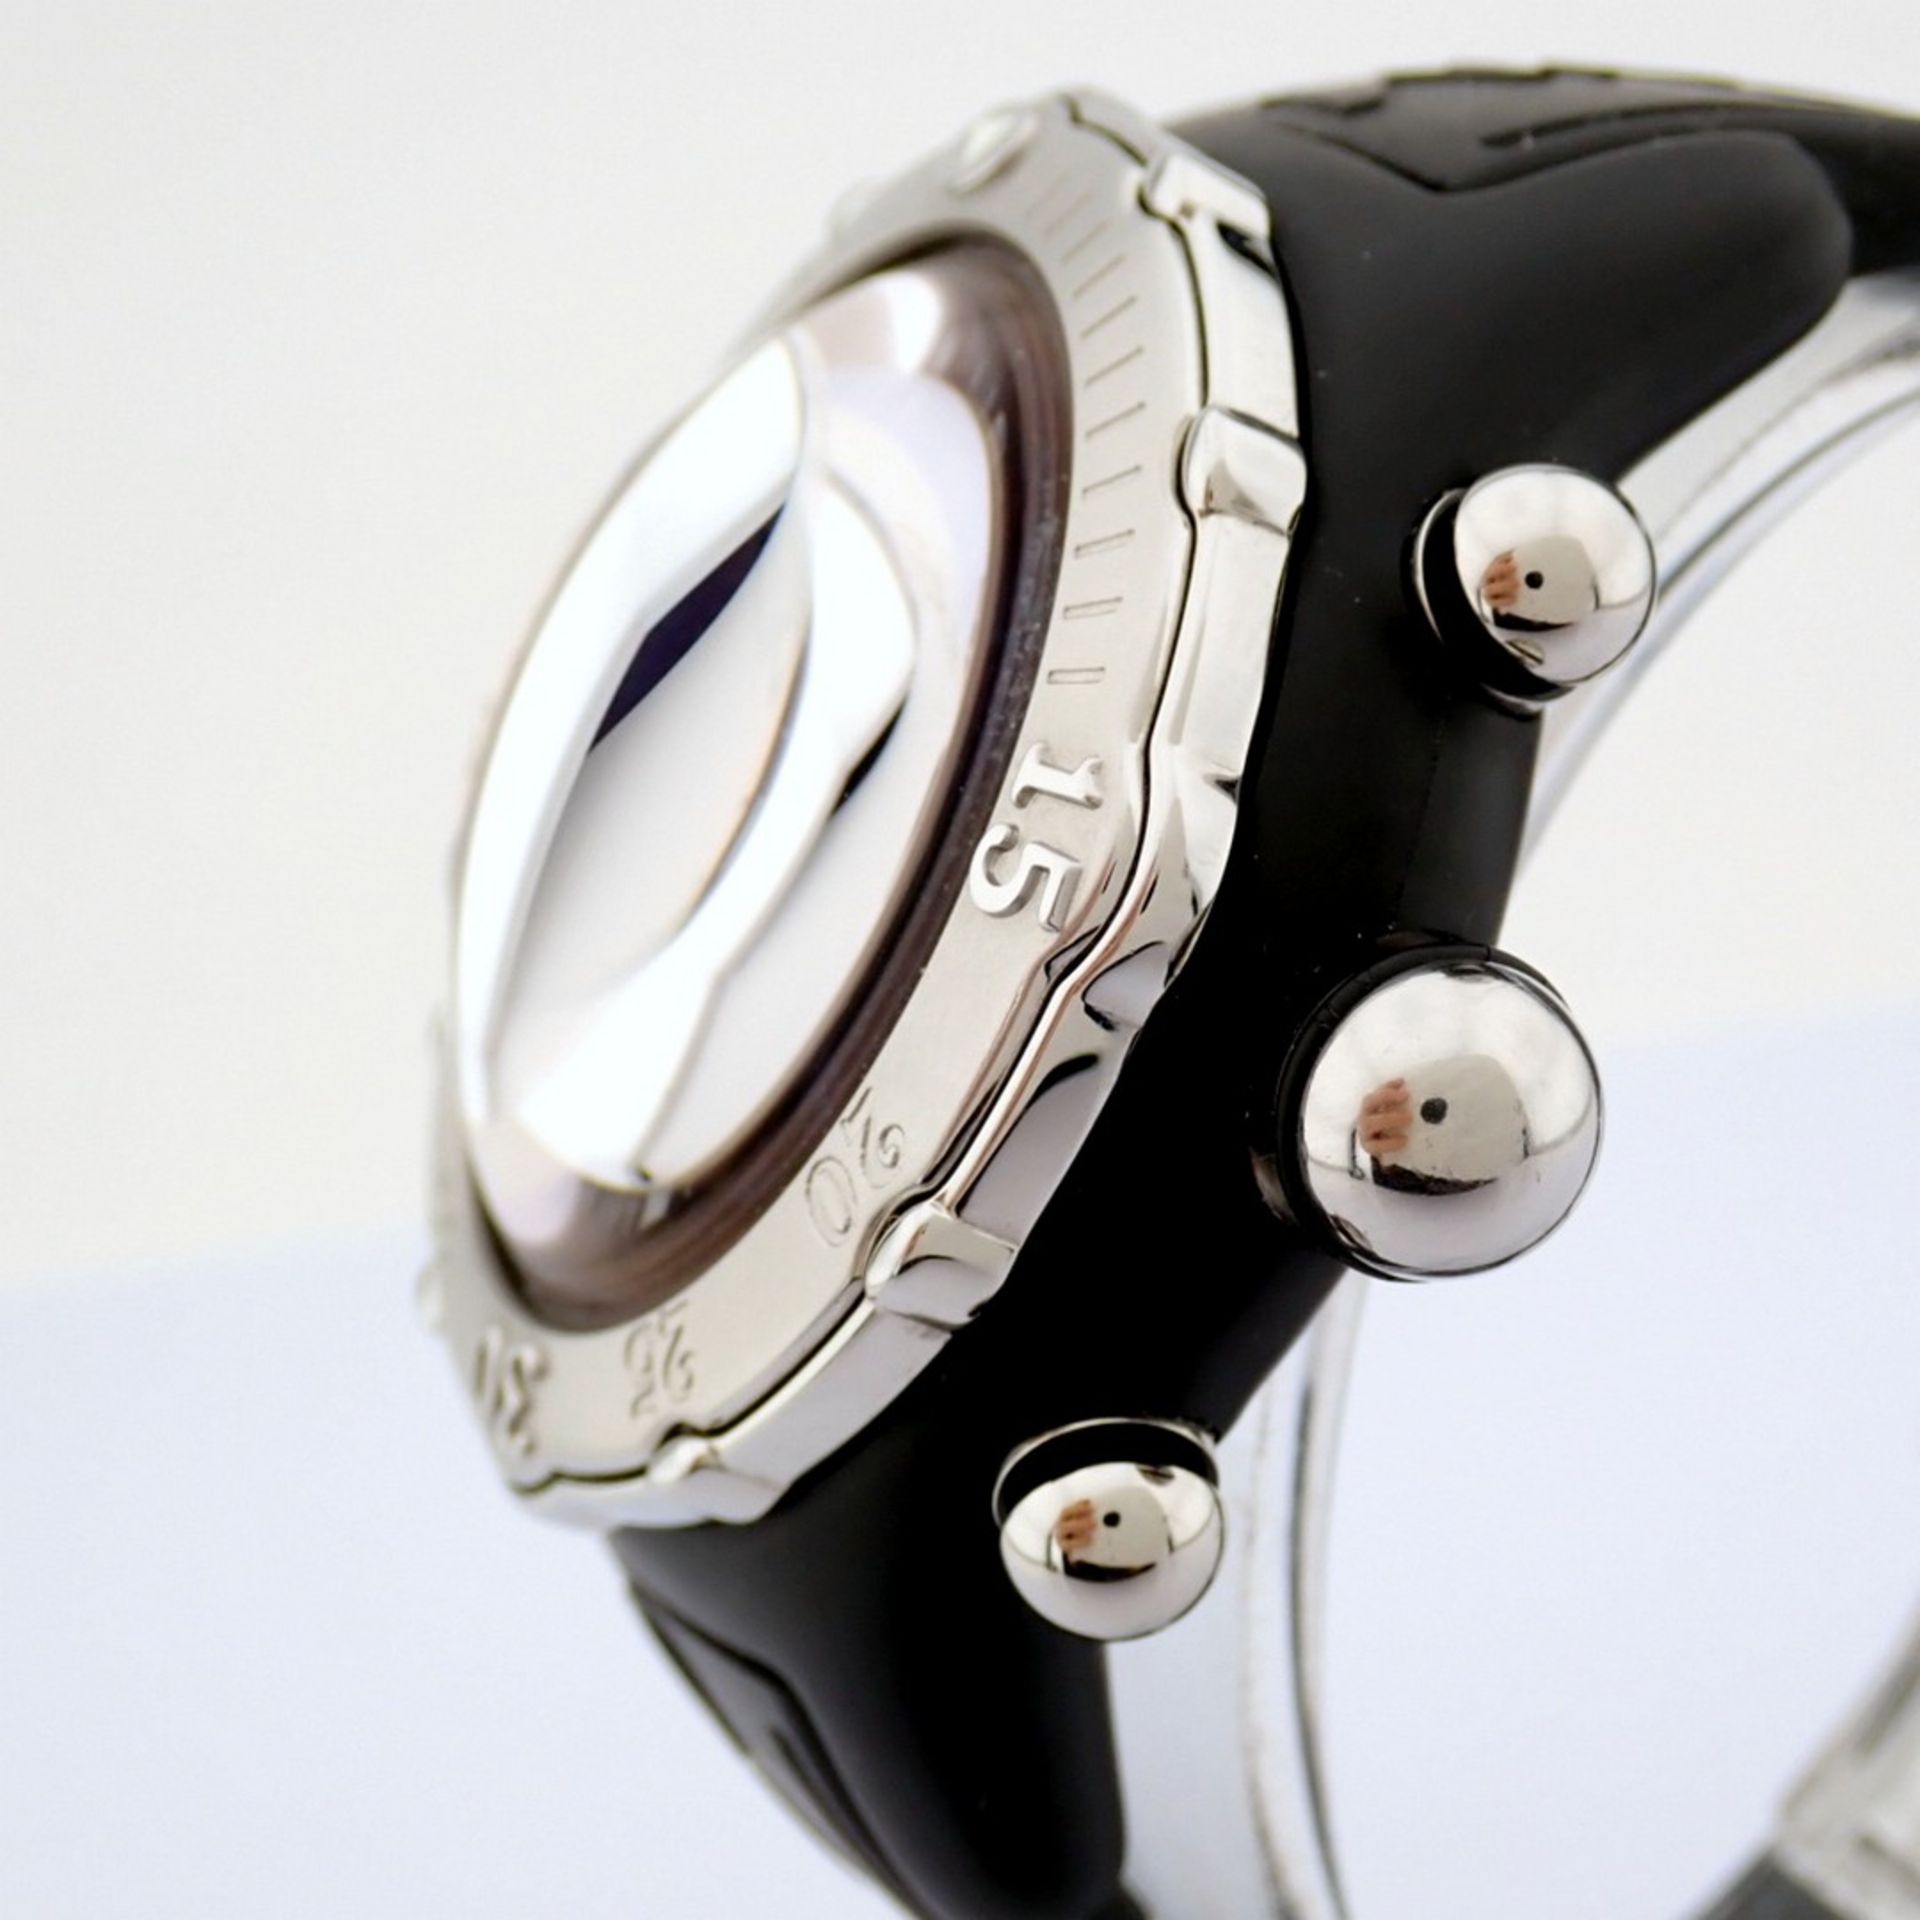 Corum / Midnight Chronograph Diver Taucher - Gentlemen's Steel Wristwatch - Image 11 of 12